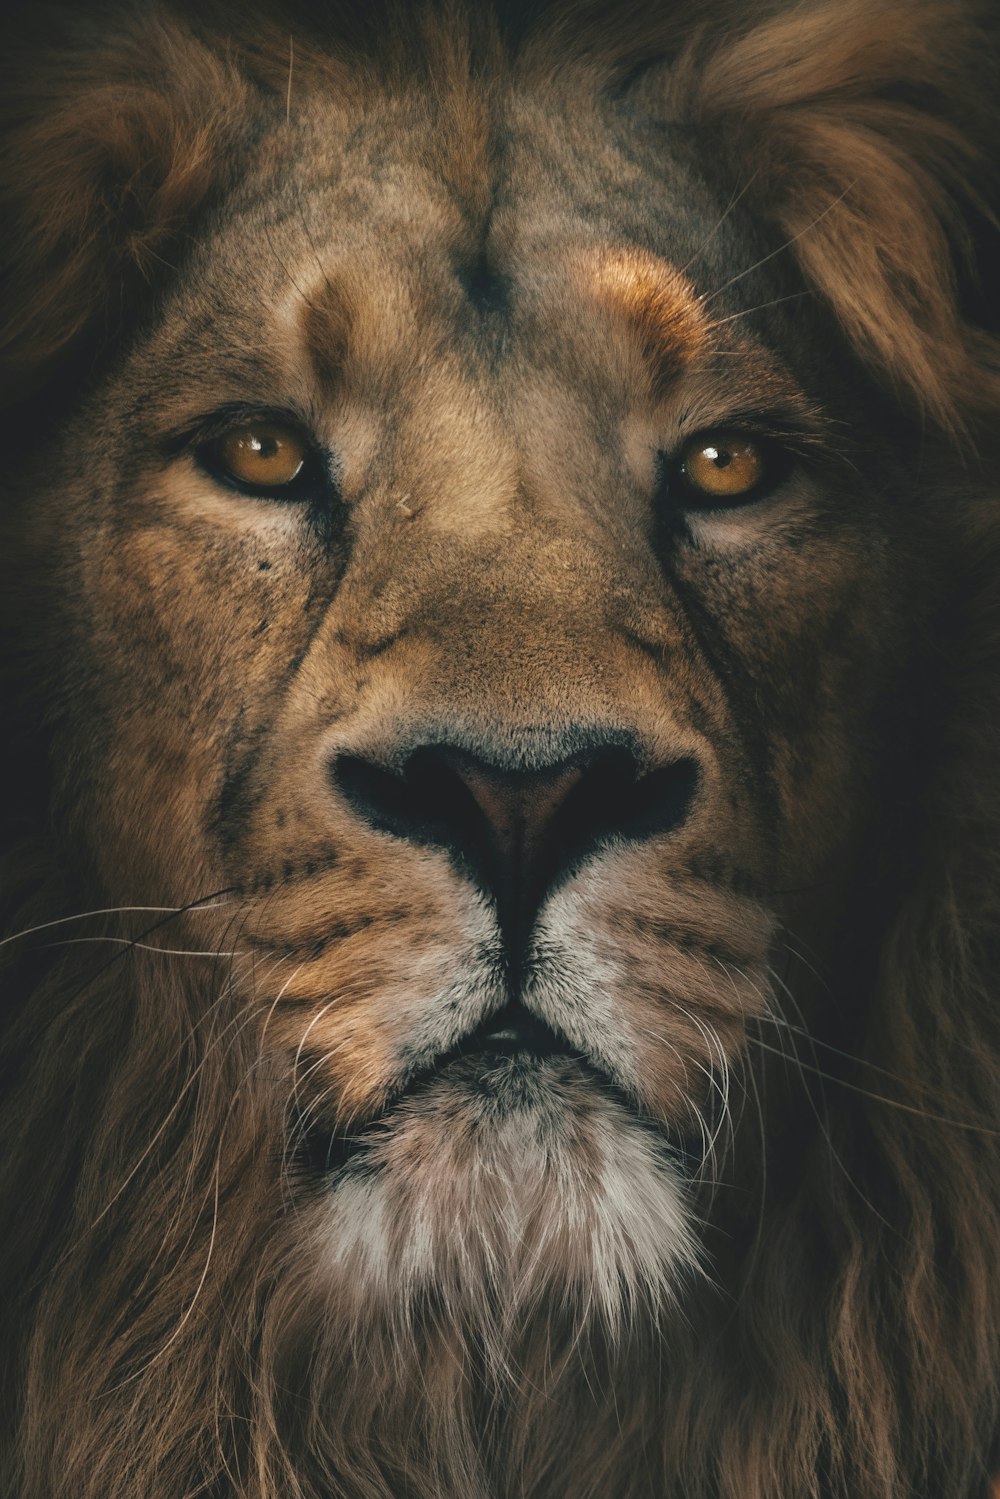 クローズアップ写真の茶色のライオン